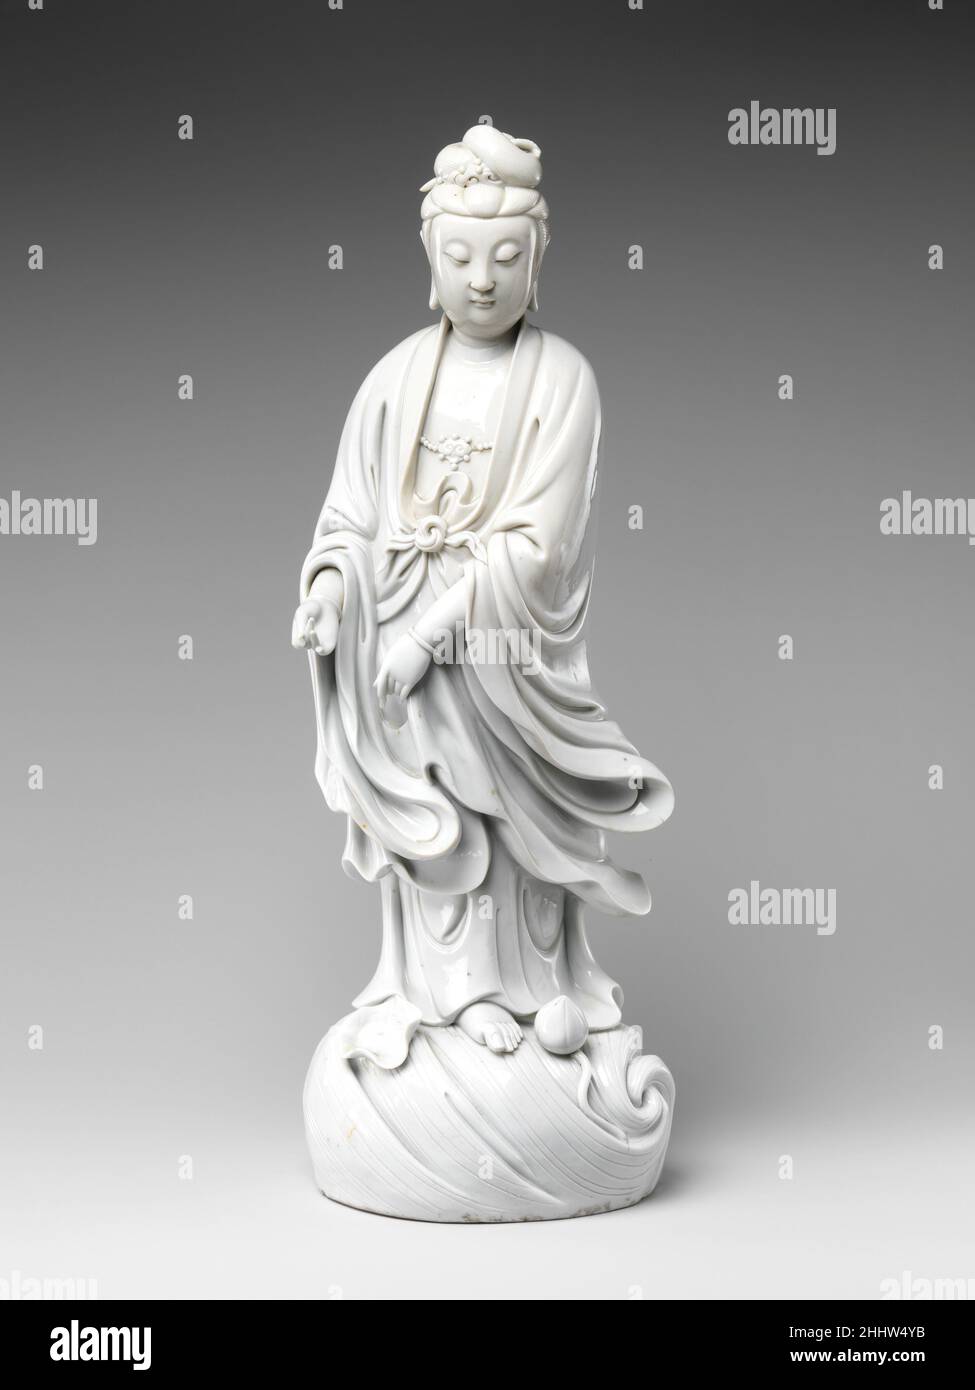 Bodhisattva Guanyin 17th. Jahrhundert China Guanyin (auf Sanskrit, Avalokiteshvara), der Bodhisattva des unendlichen Mitgefühls, ist eine der am häufigsten dargestellten buddhistischen Figuren in der chinesischen Kunst. Man glaubte, dass sie die Fähigkeit besitzt, jeden leidenden Menschen in der sterblichen Welt zu segnen. Obwohl in Indien der Bodhisattva ursprünglich entweder als geschlechtslos oder männlich verstanden wurde, waren in China weibliche Manifestationen wie diese üblich. Bodhisattva Guanyin 51236 Stockfoto